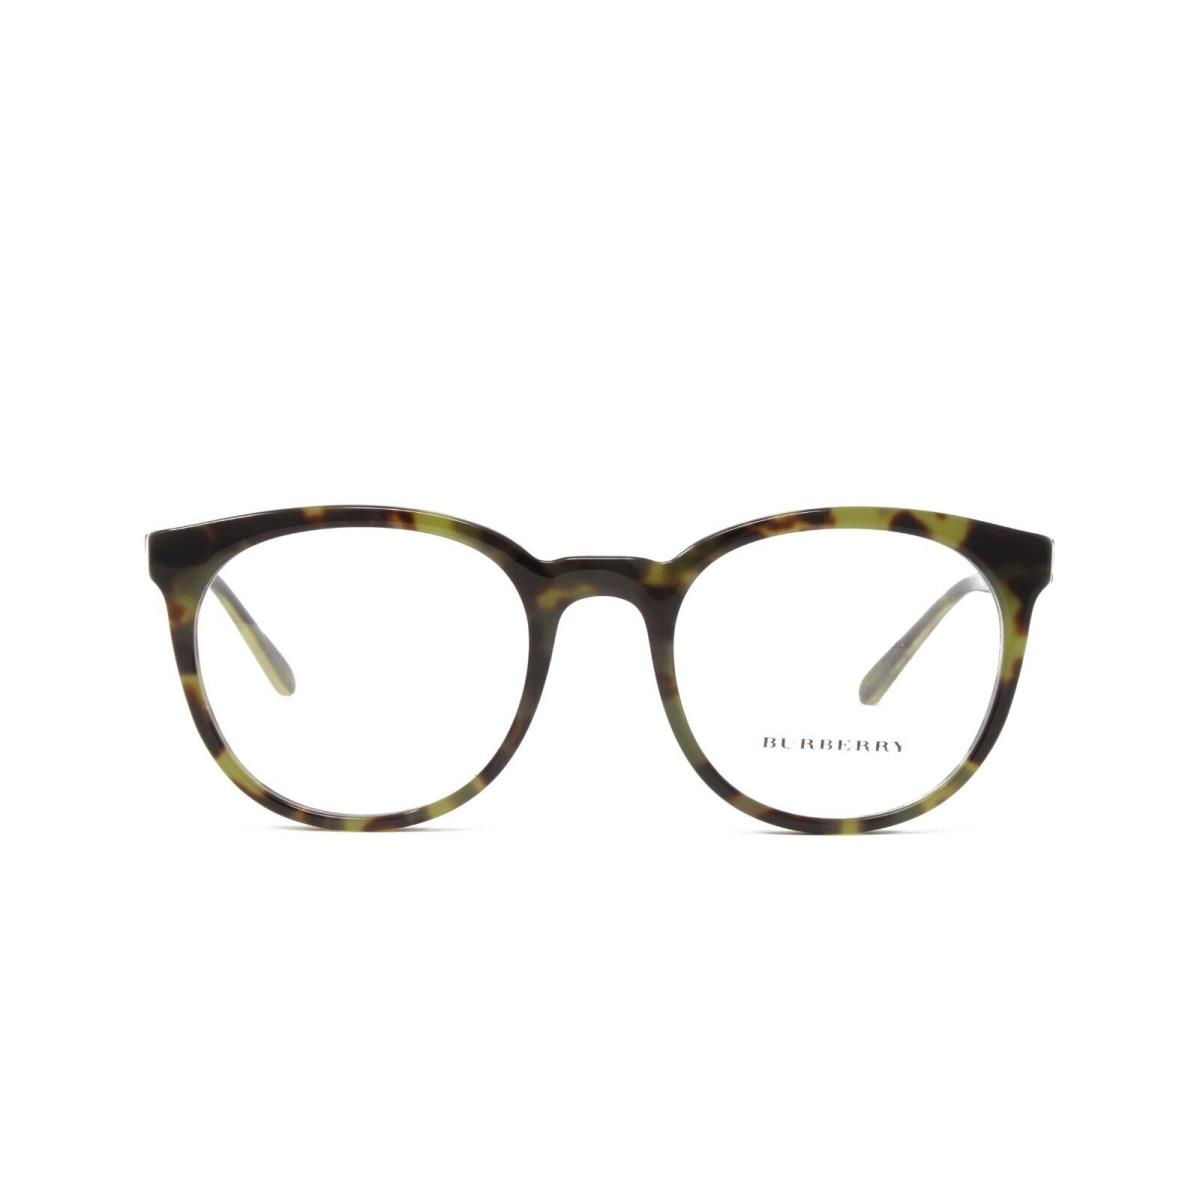 Burberry eyeglasses  - Green Frame 0